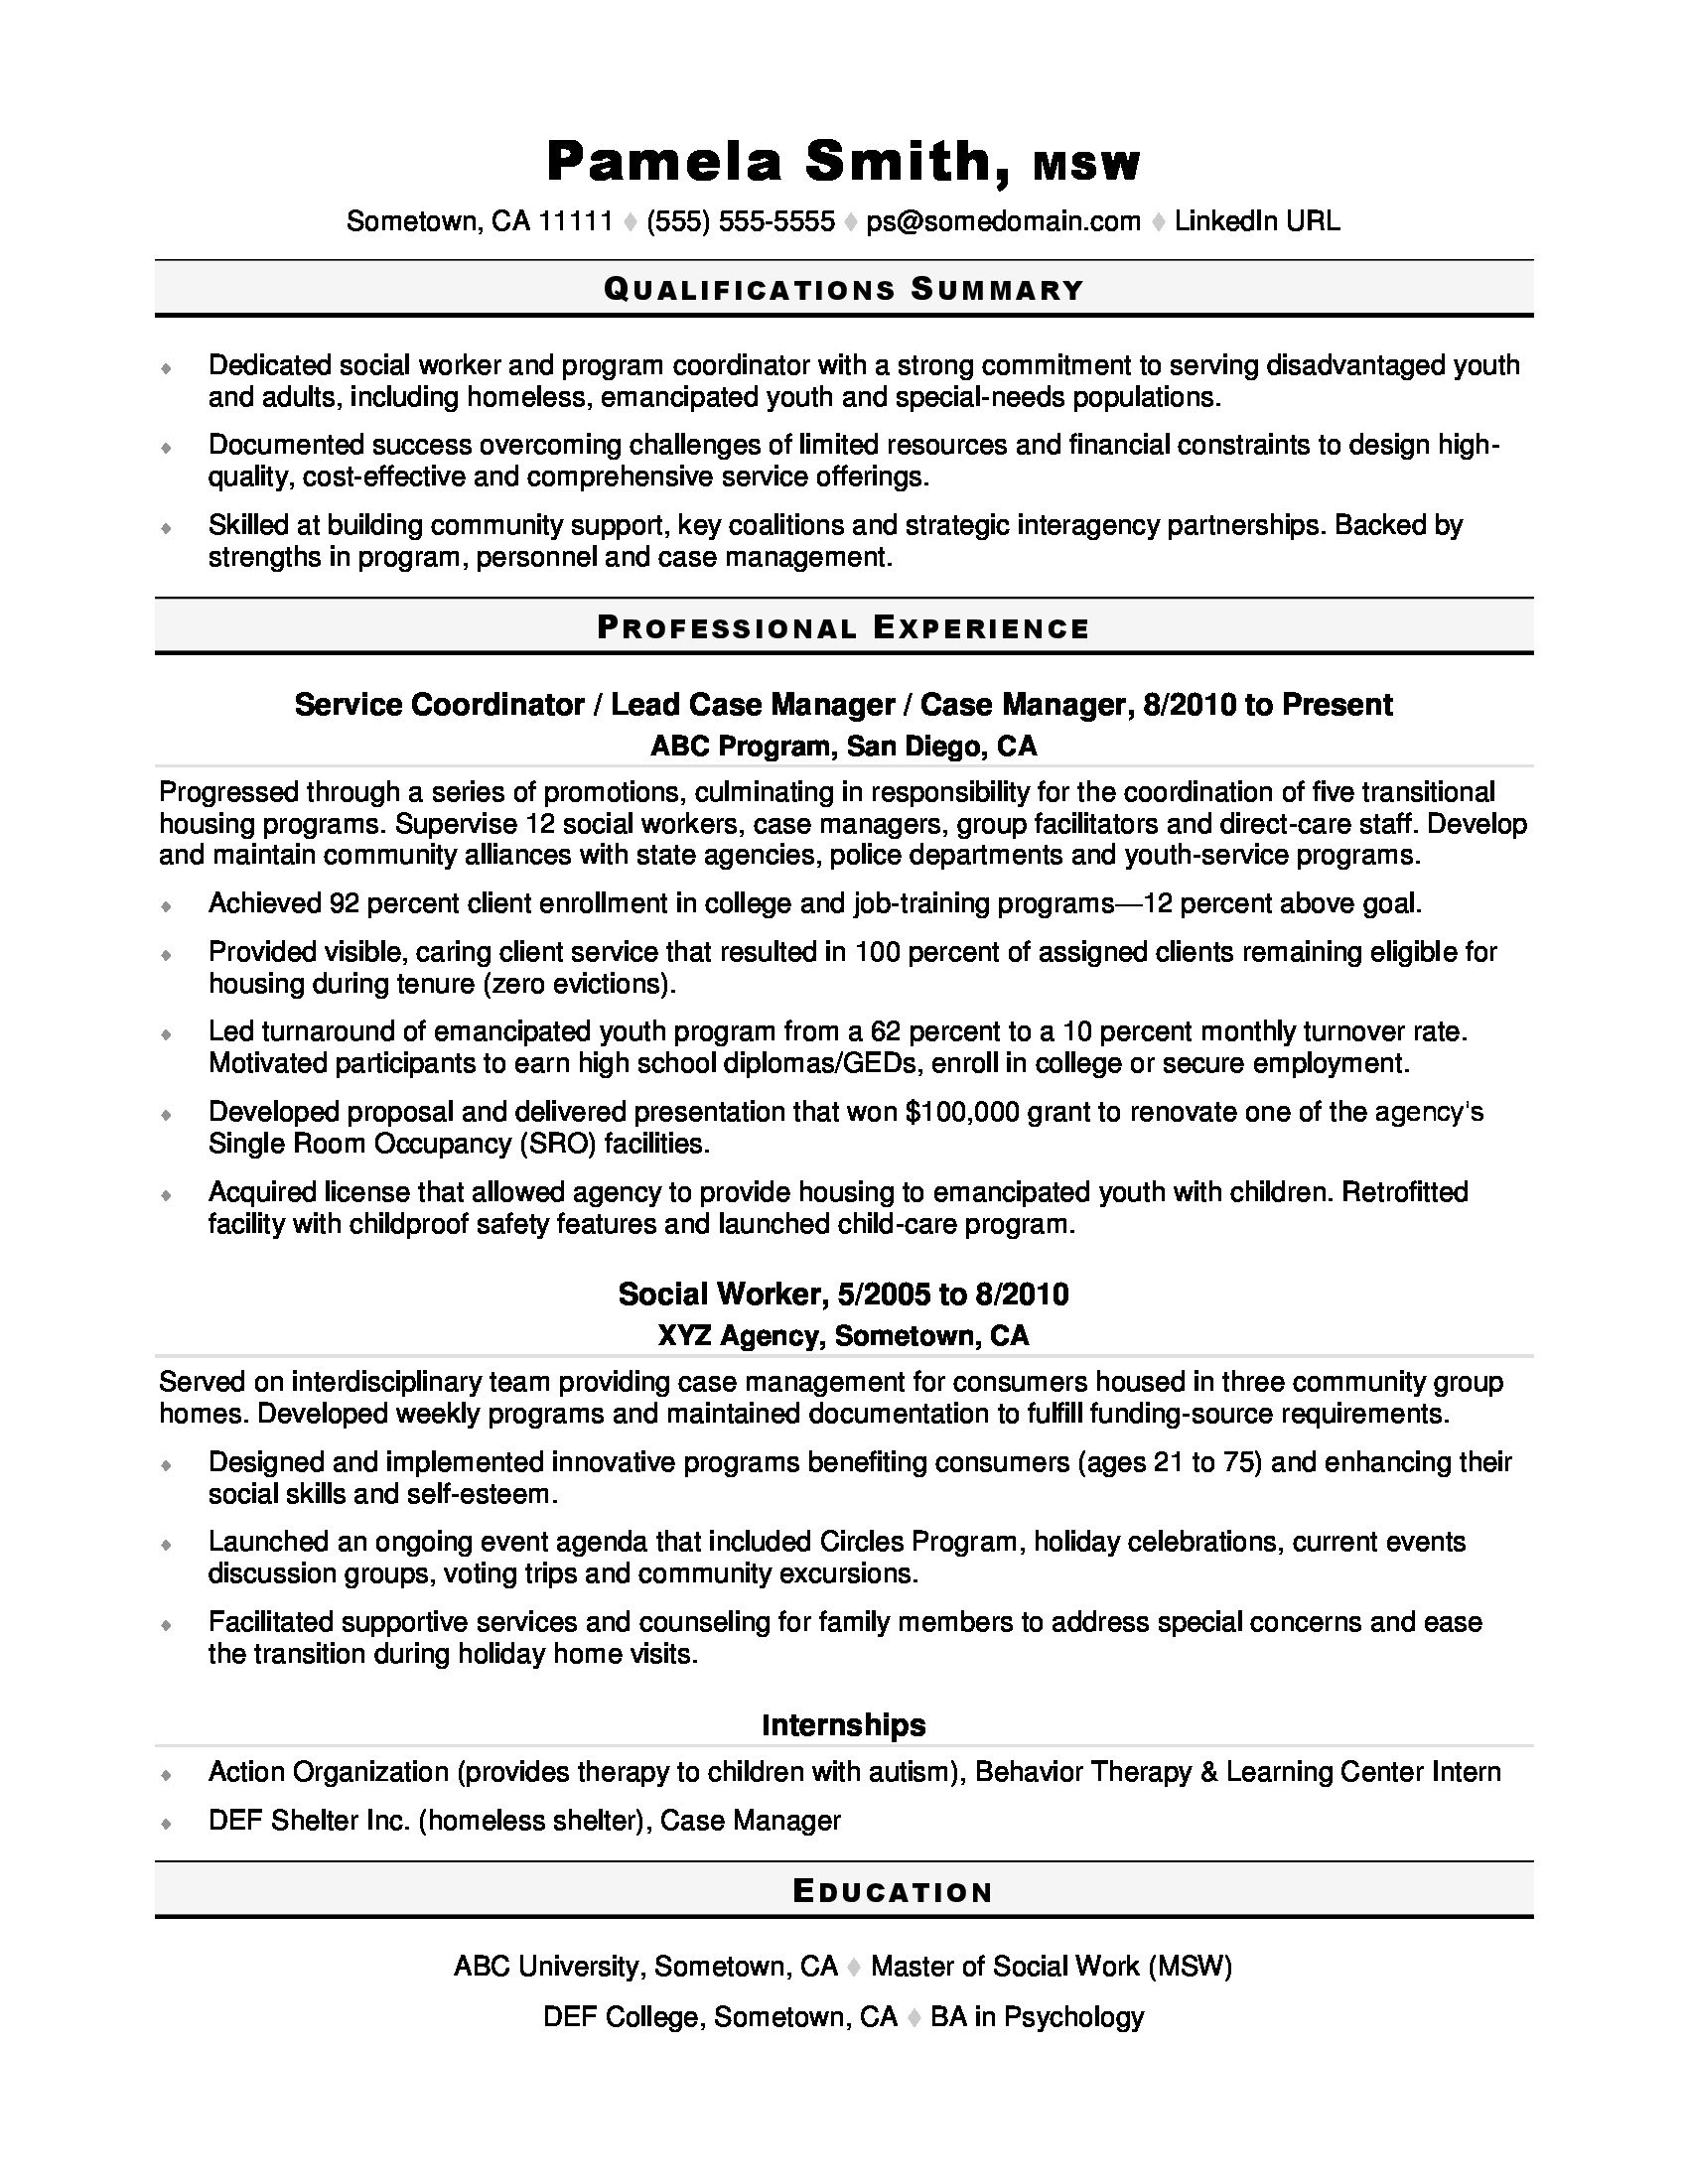 Resume Skills Section Sample social Media social Work Resume Monster.com